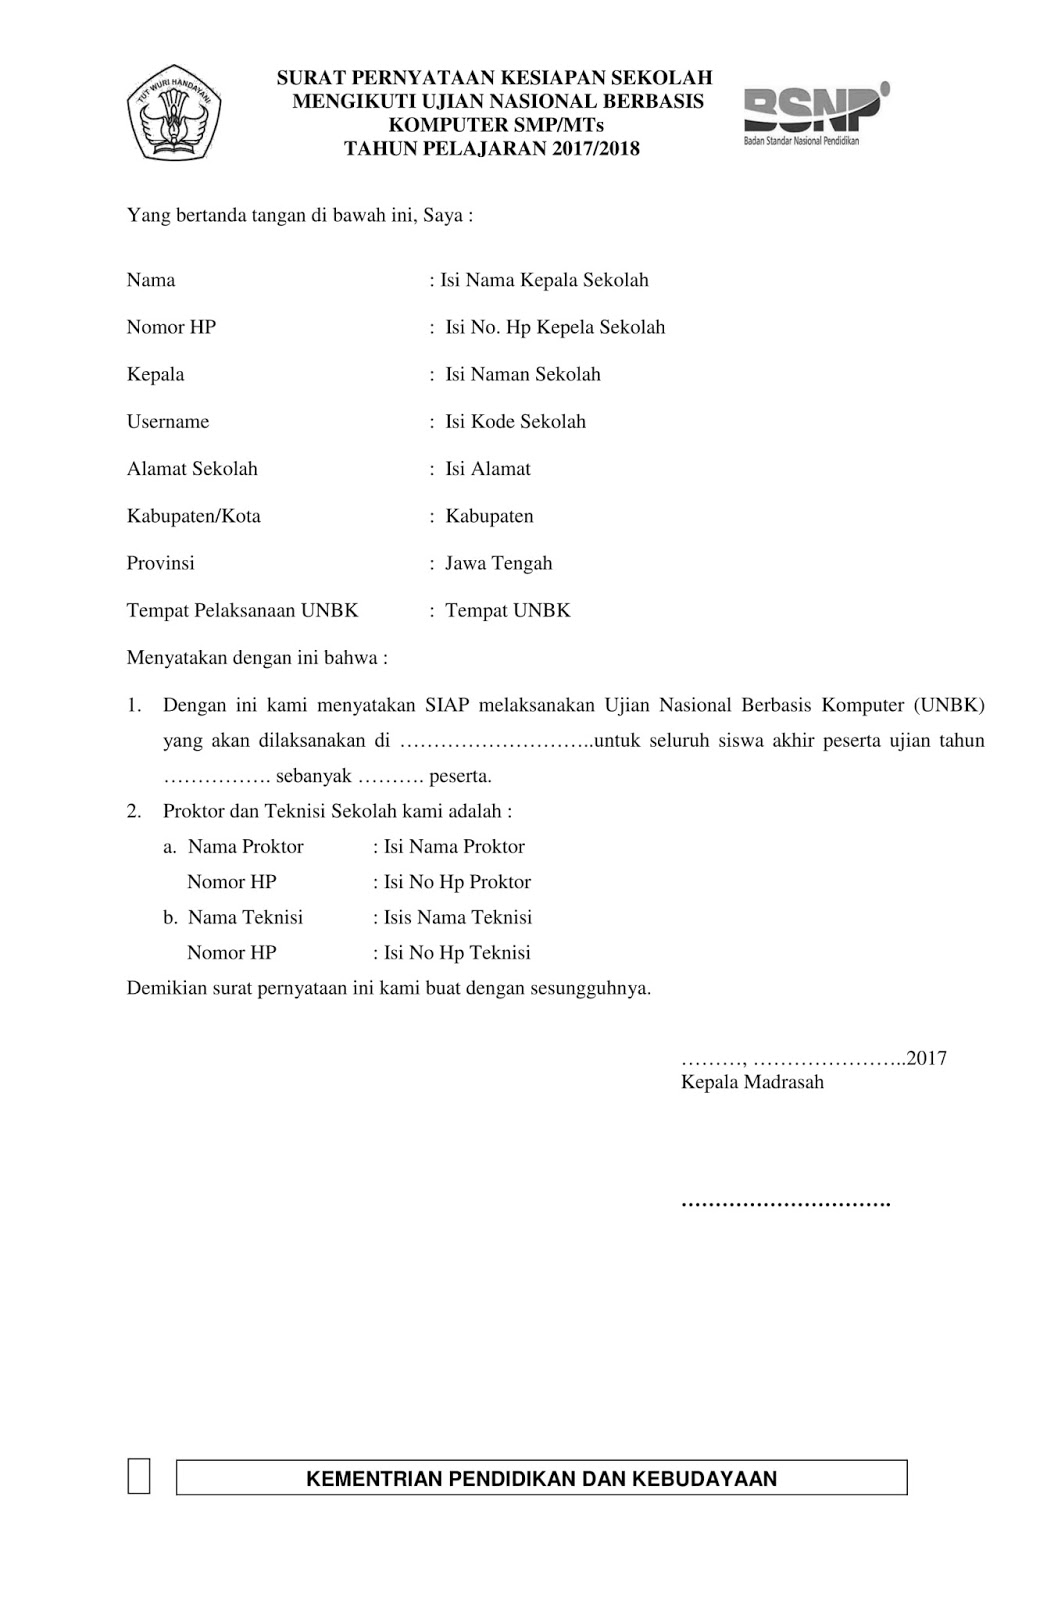 Contoh Surat Pernyataan Kesiapan Unbk 2018 Kemdikbud Simadrasah